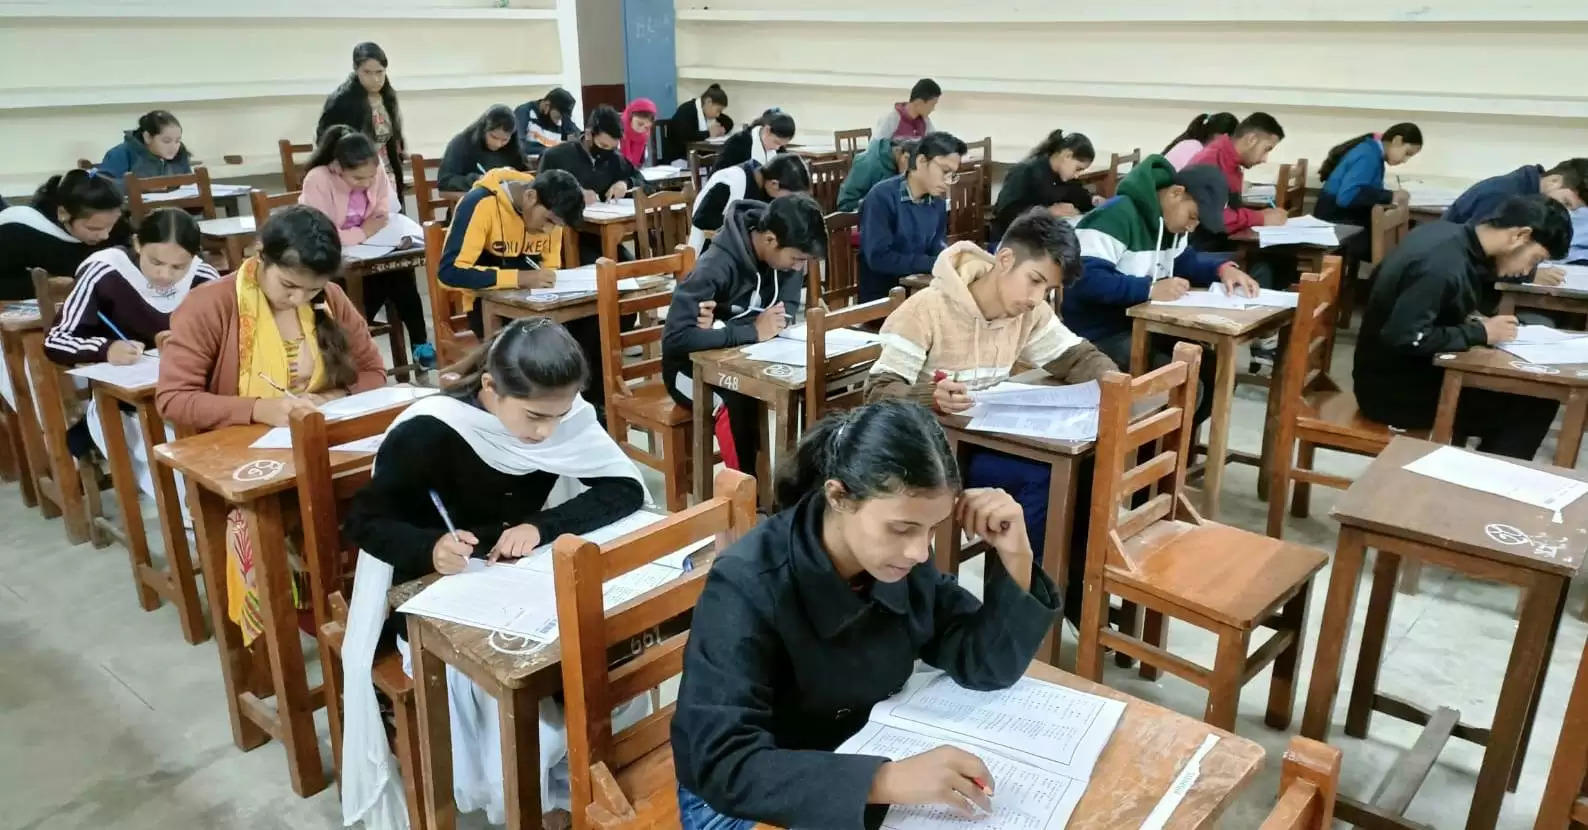 सिविल सर्विसेज परीक्षा की कोचिंग के लिए दो सौ से अधिक बच्चों ने दी प्रवेश परीक्षा